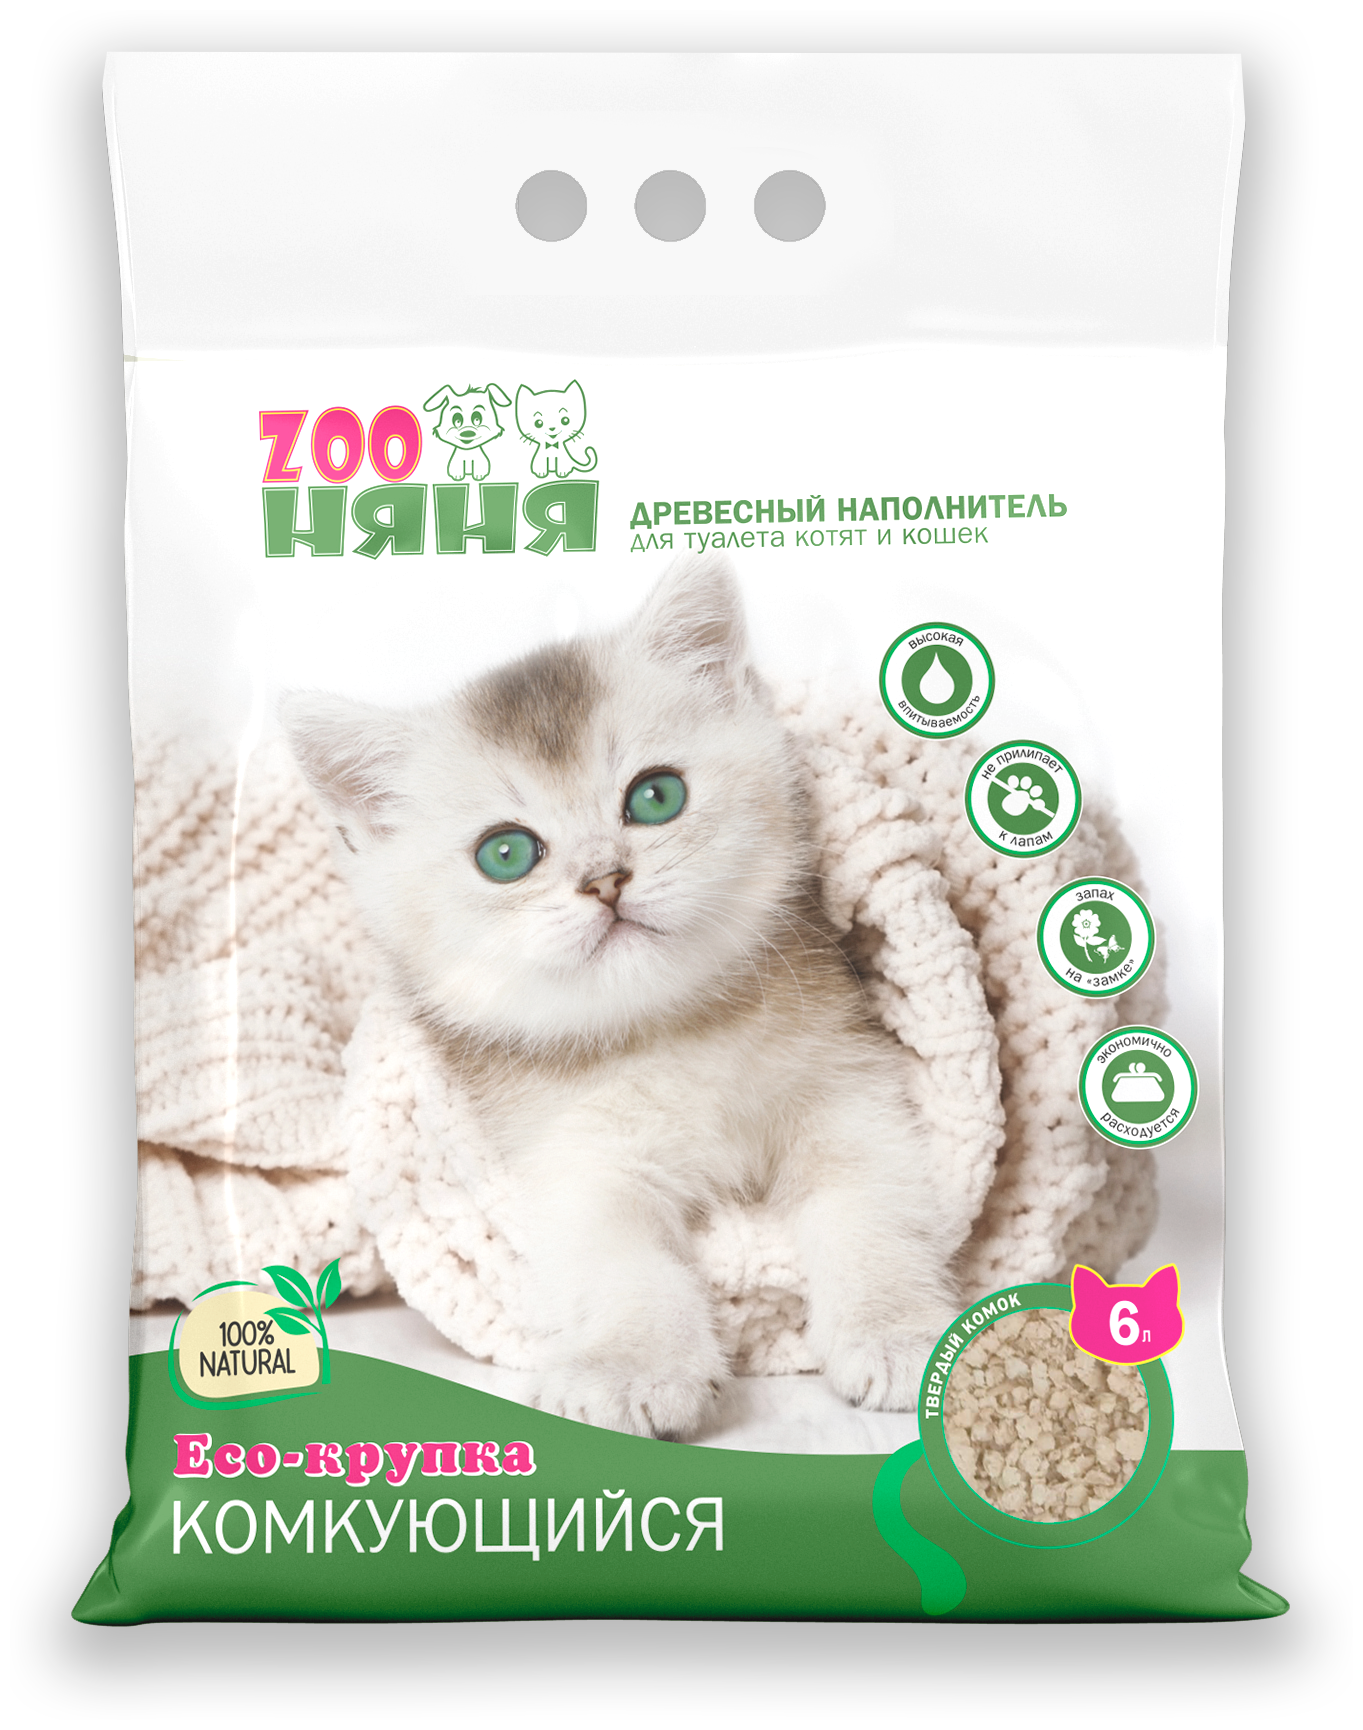 Древесный наполнитель для туалета котят и кошек Zoo Няня Eco-крупка комкующийся 6л (24 кг)